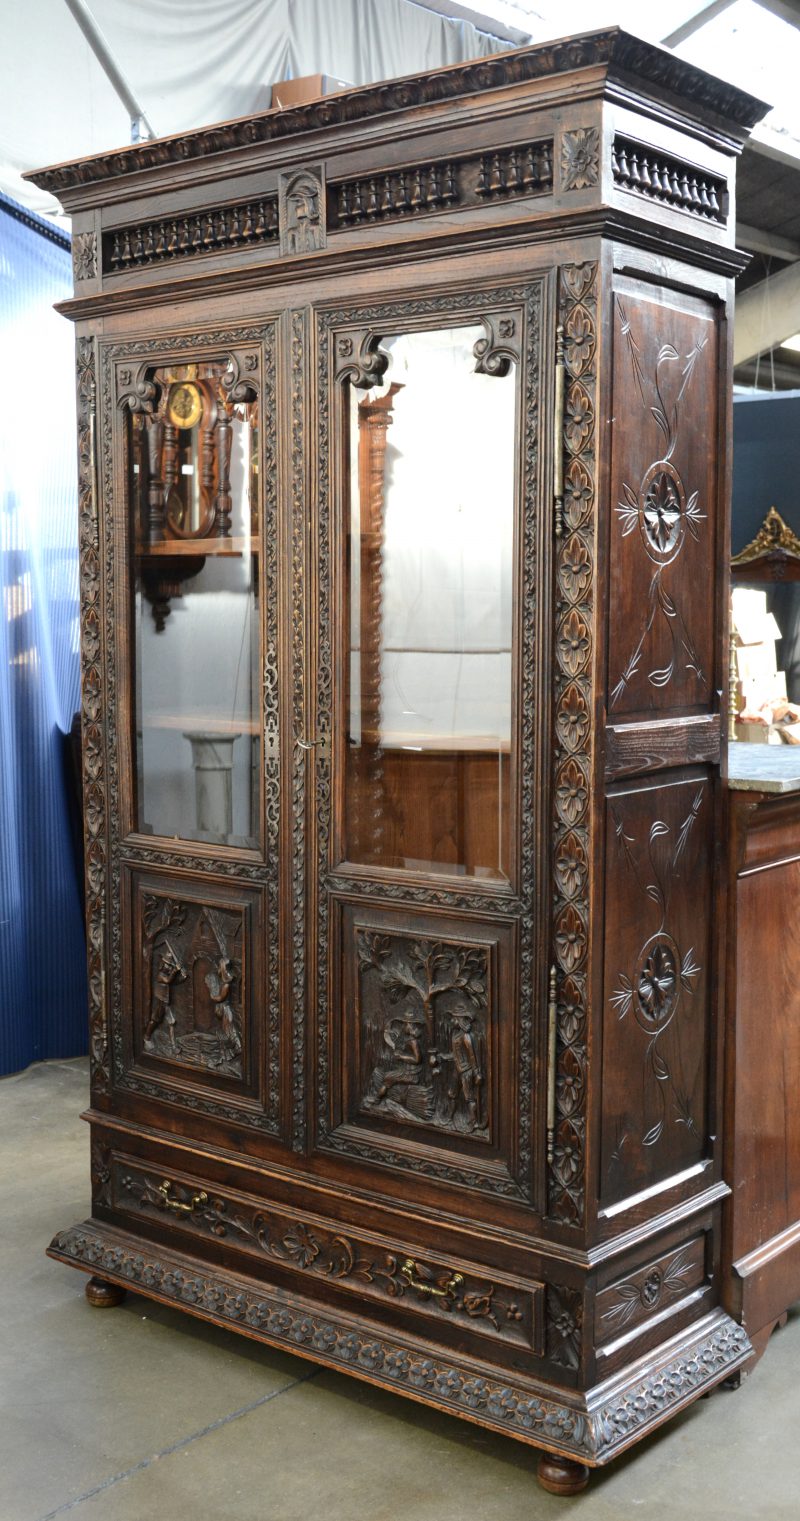 Een Bretoense boekenkast met twee gevitreerde deuren, versierd met gebeeldhowde scènes.